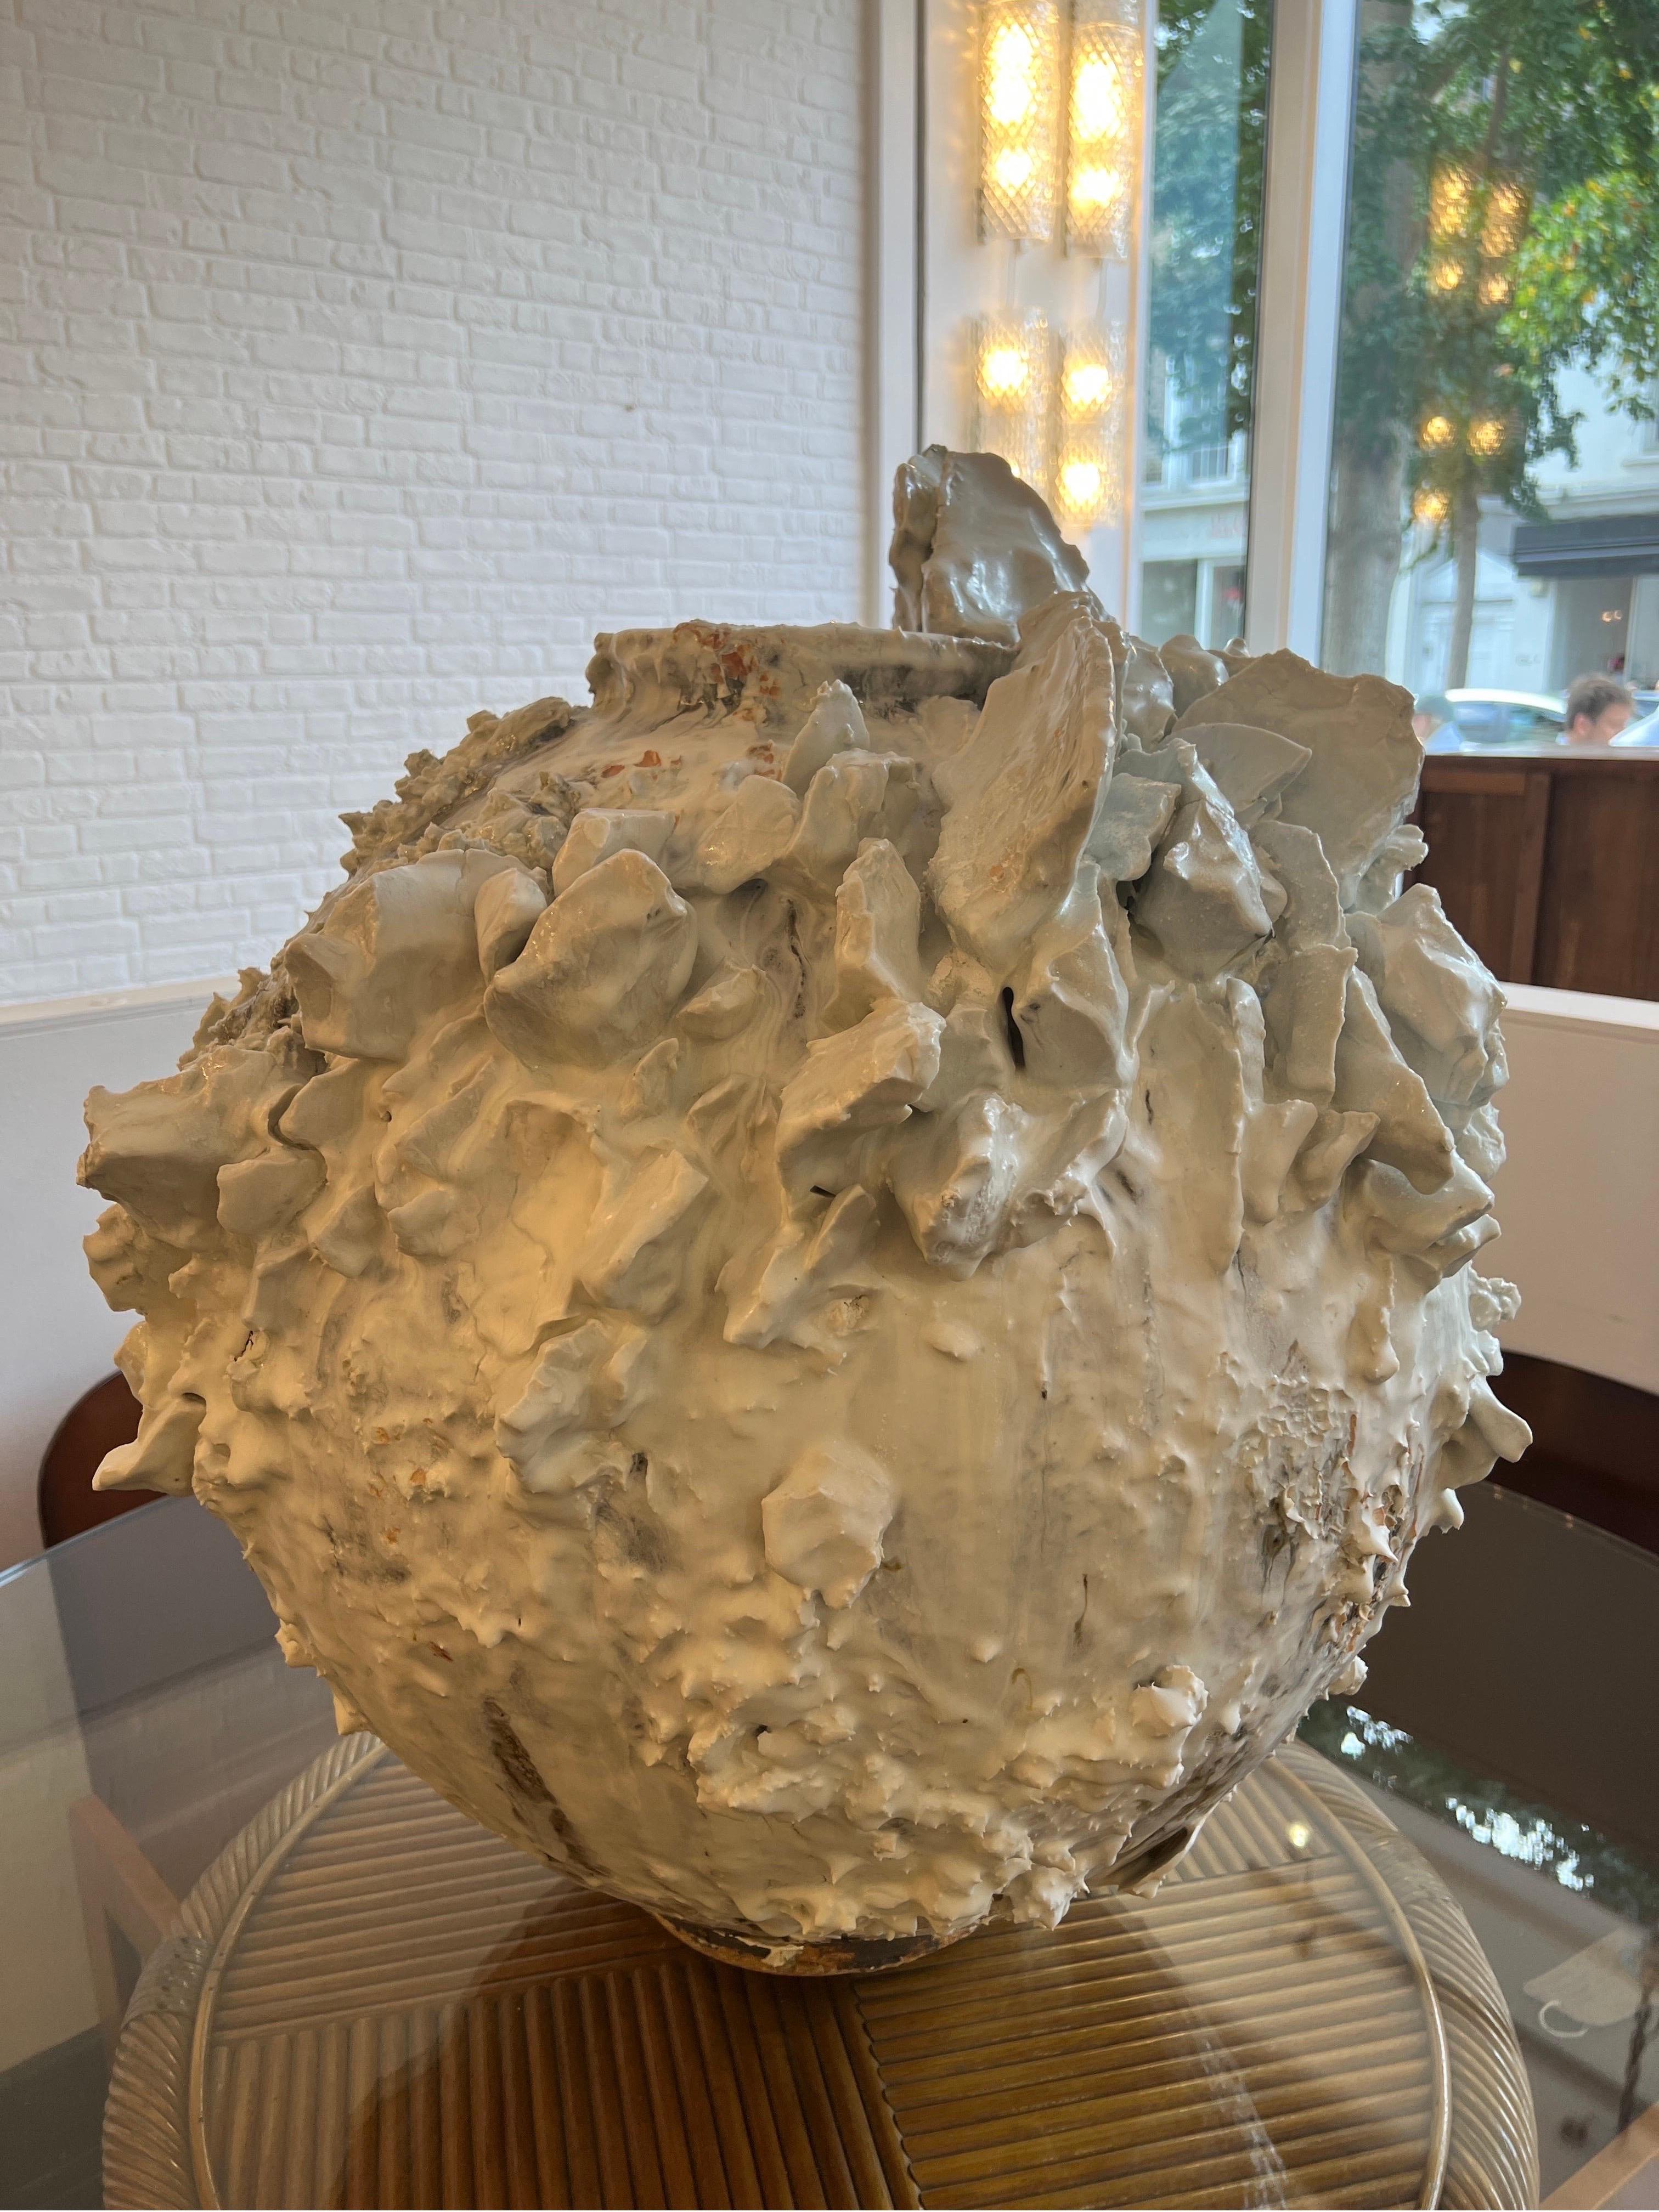 Akiko Hirai extra großer Mondkrug aus Steinzeug, Porzellan, weißer Glasur und Holzasche 2021
H72cm (28,5 Zoll) B65cm (25,6 Zoll)

Akiko Hirai, Finalistin des Loewe Craft Prize, verbindet in ihren Arbeiten japanische und britische Keramiktraditionen.